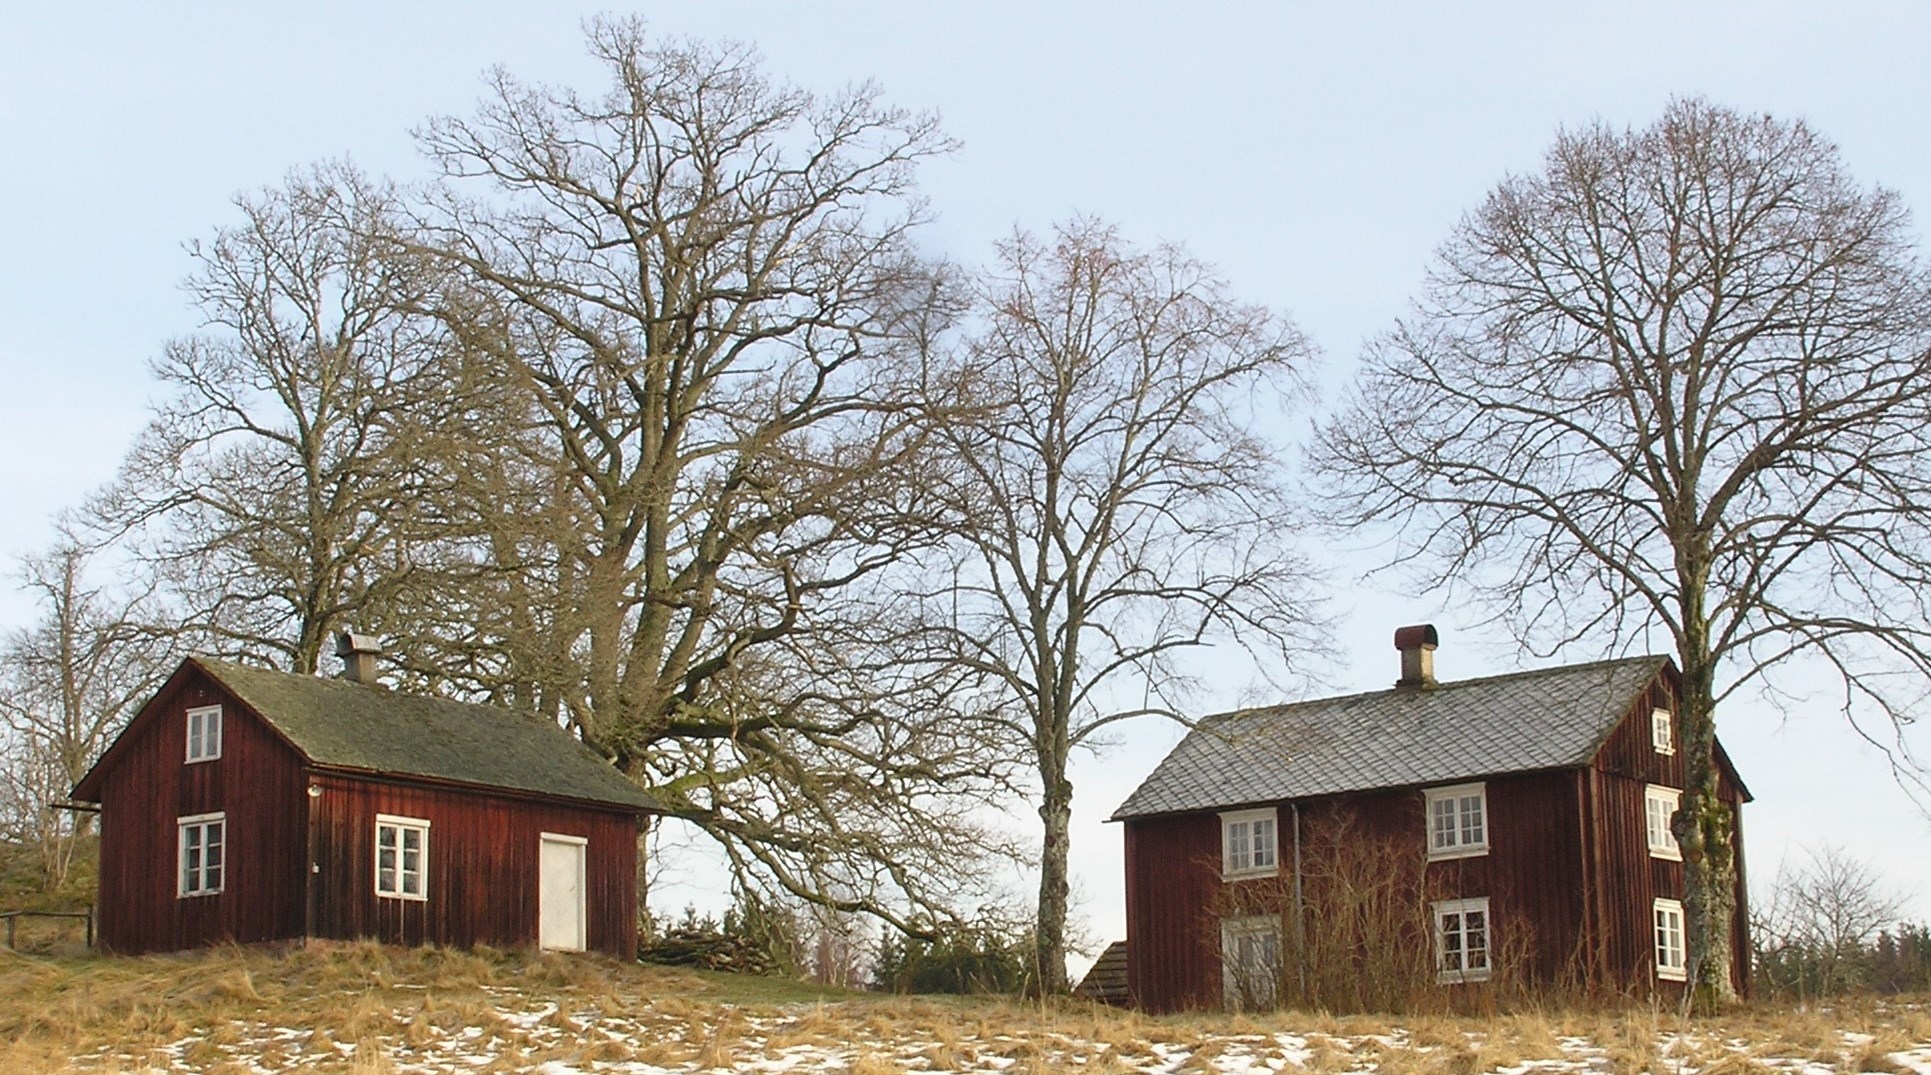 två röda hus med skiffertak i skir vårsol och träd i bakgrunden